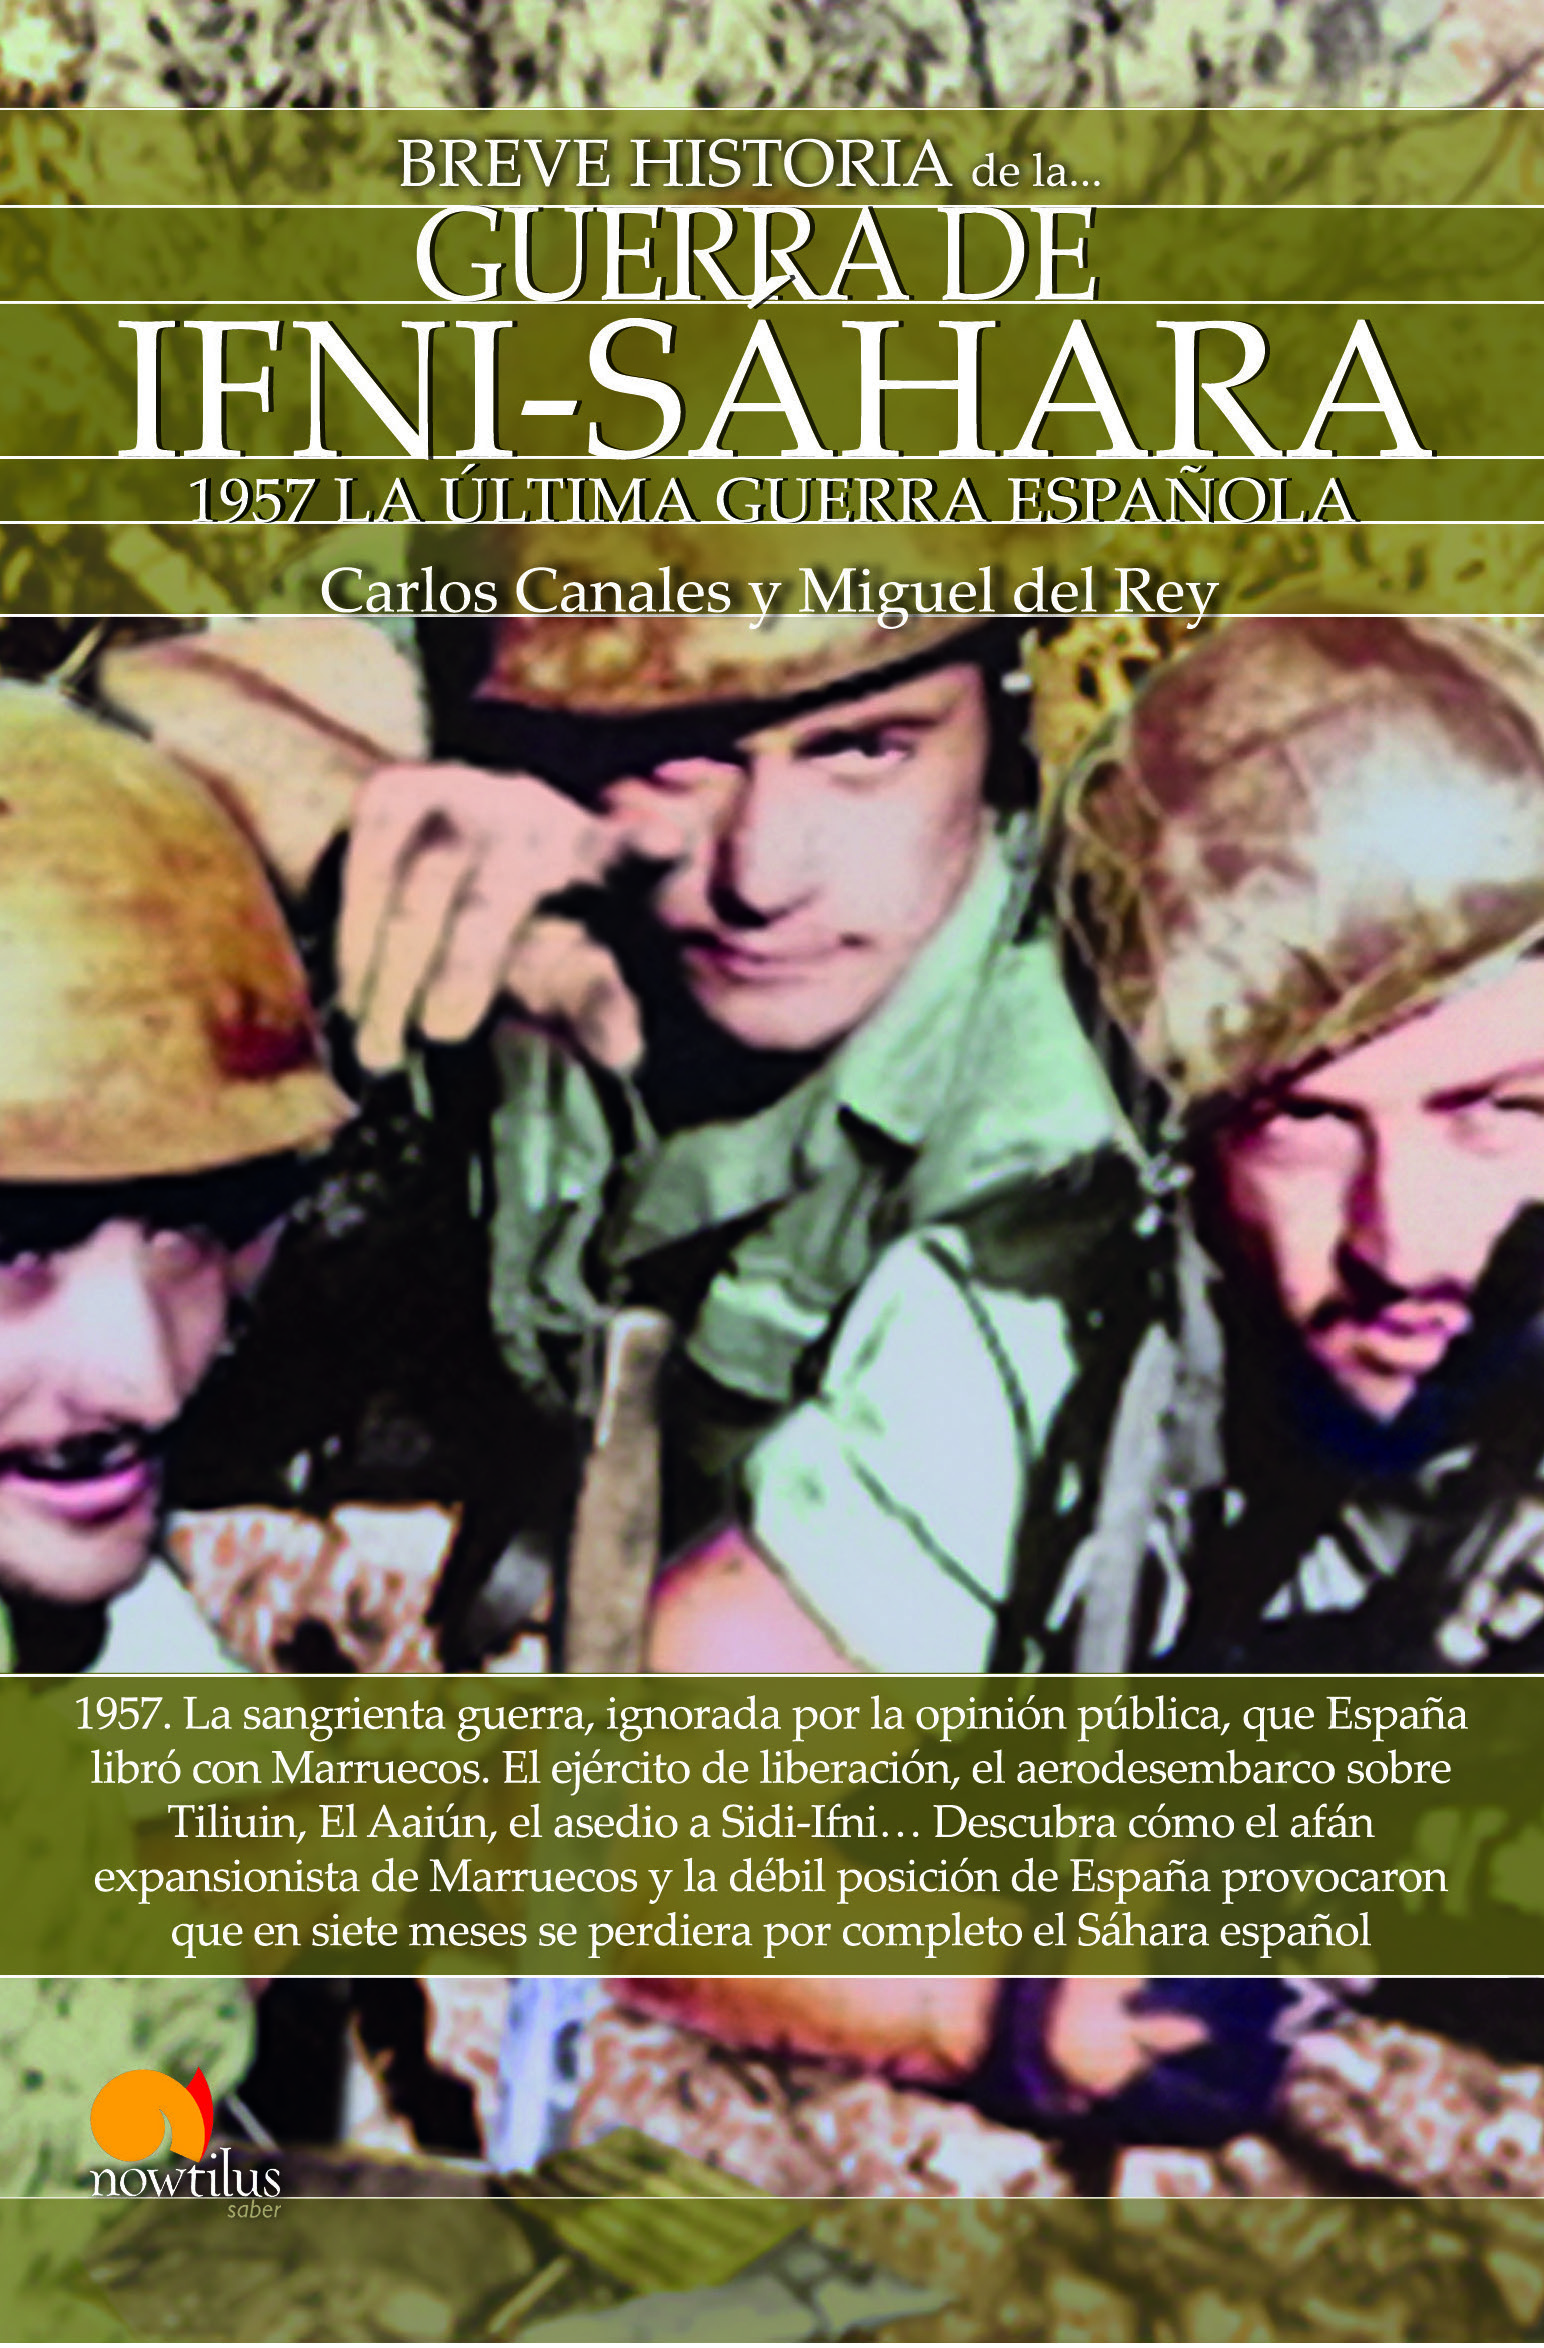 Breve historia de la Guerra de Ifni-Sáhara nueva edición   «1957 La última guerra española» (9788413052700)